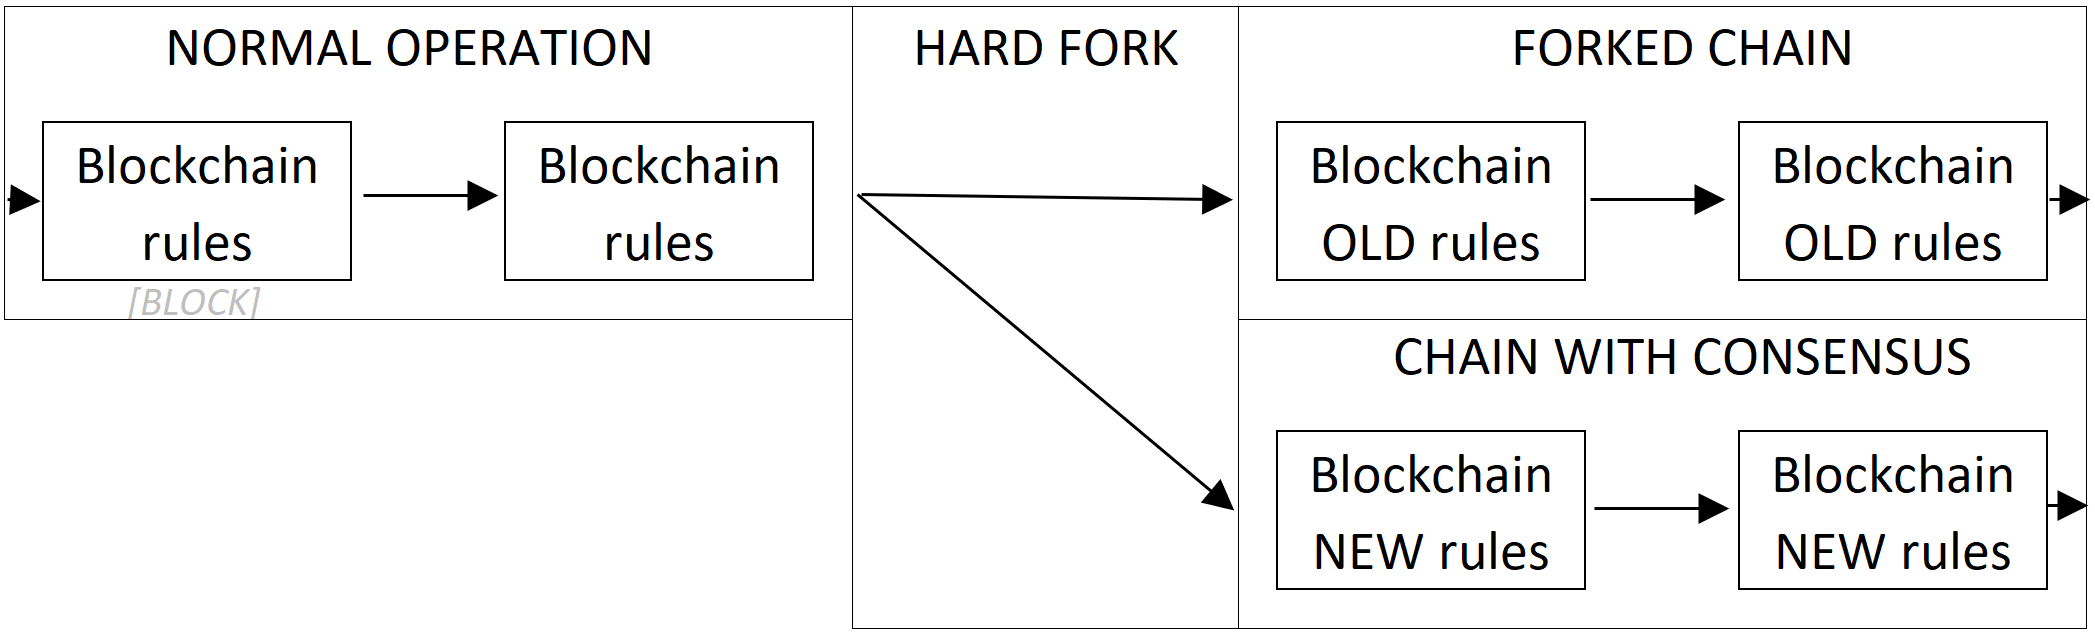 Bitcoin Cash fork